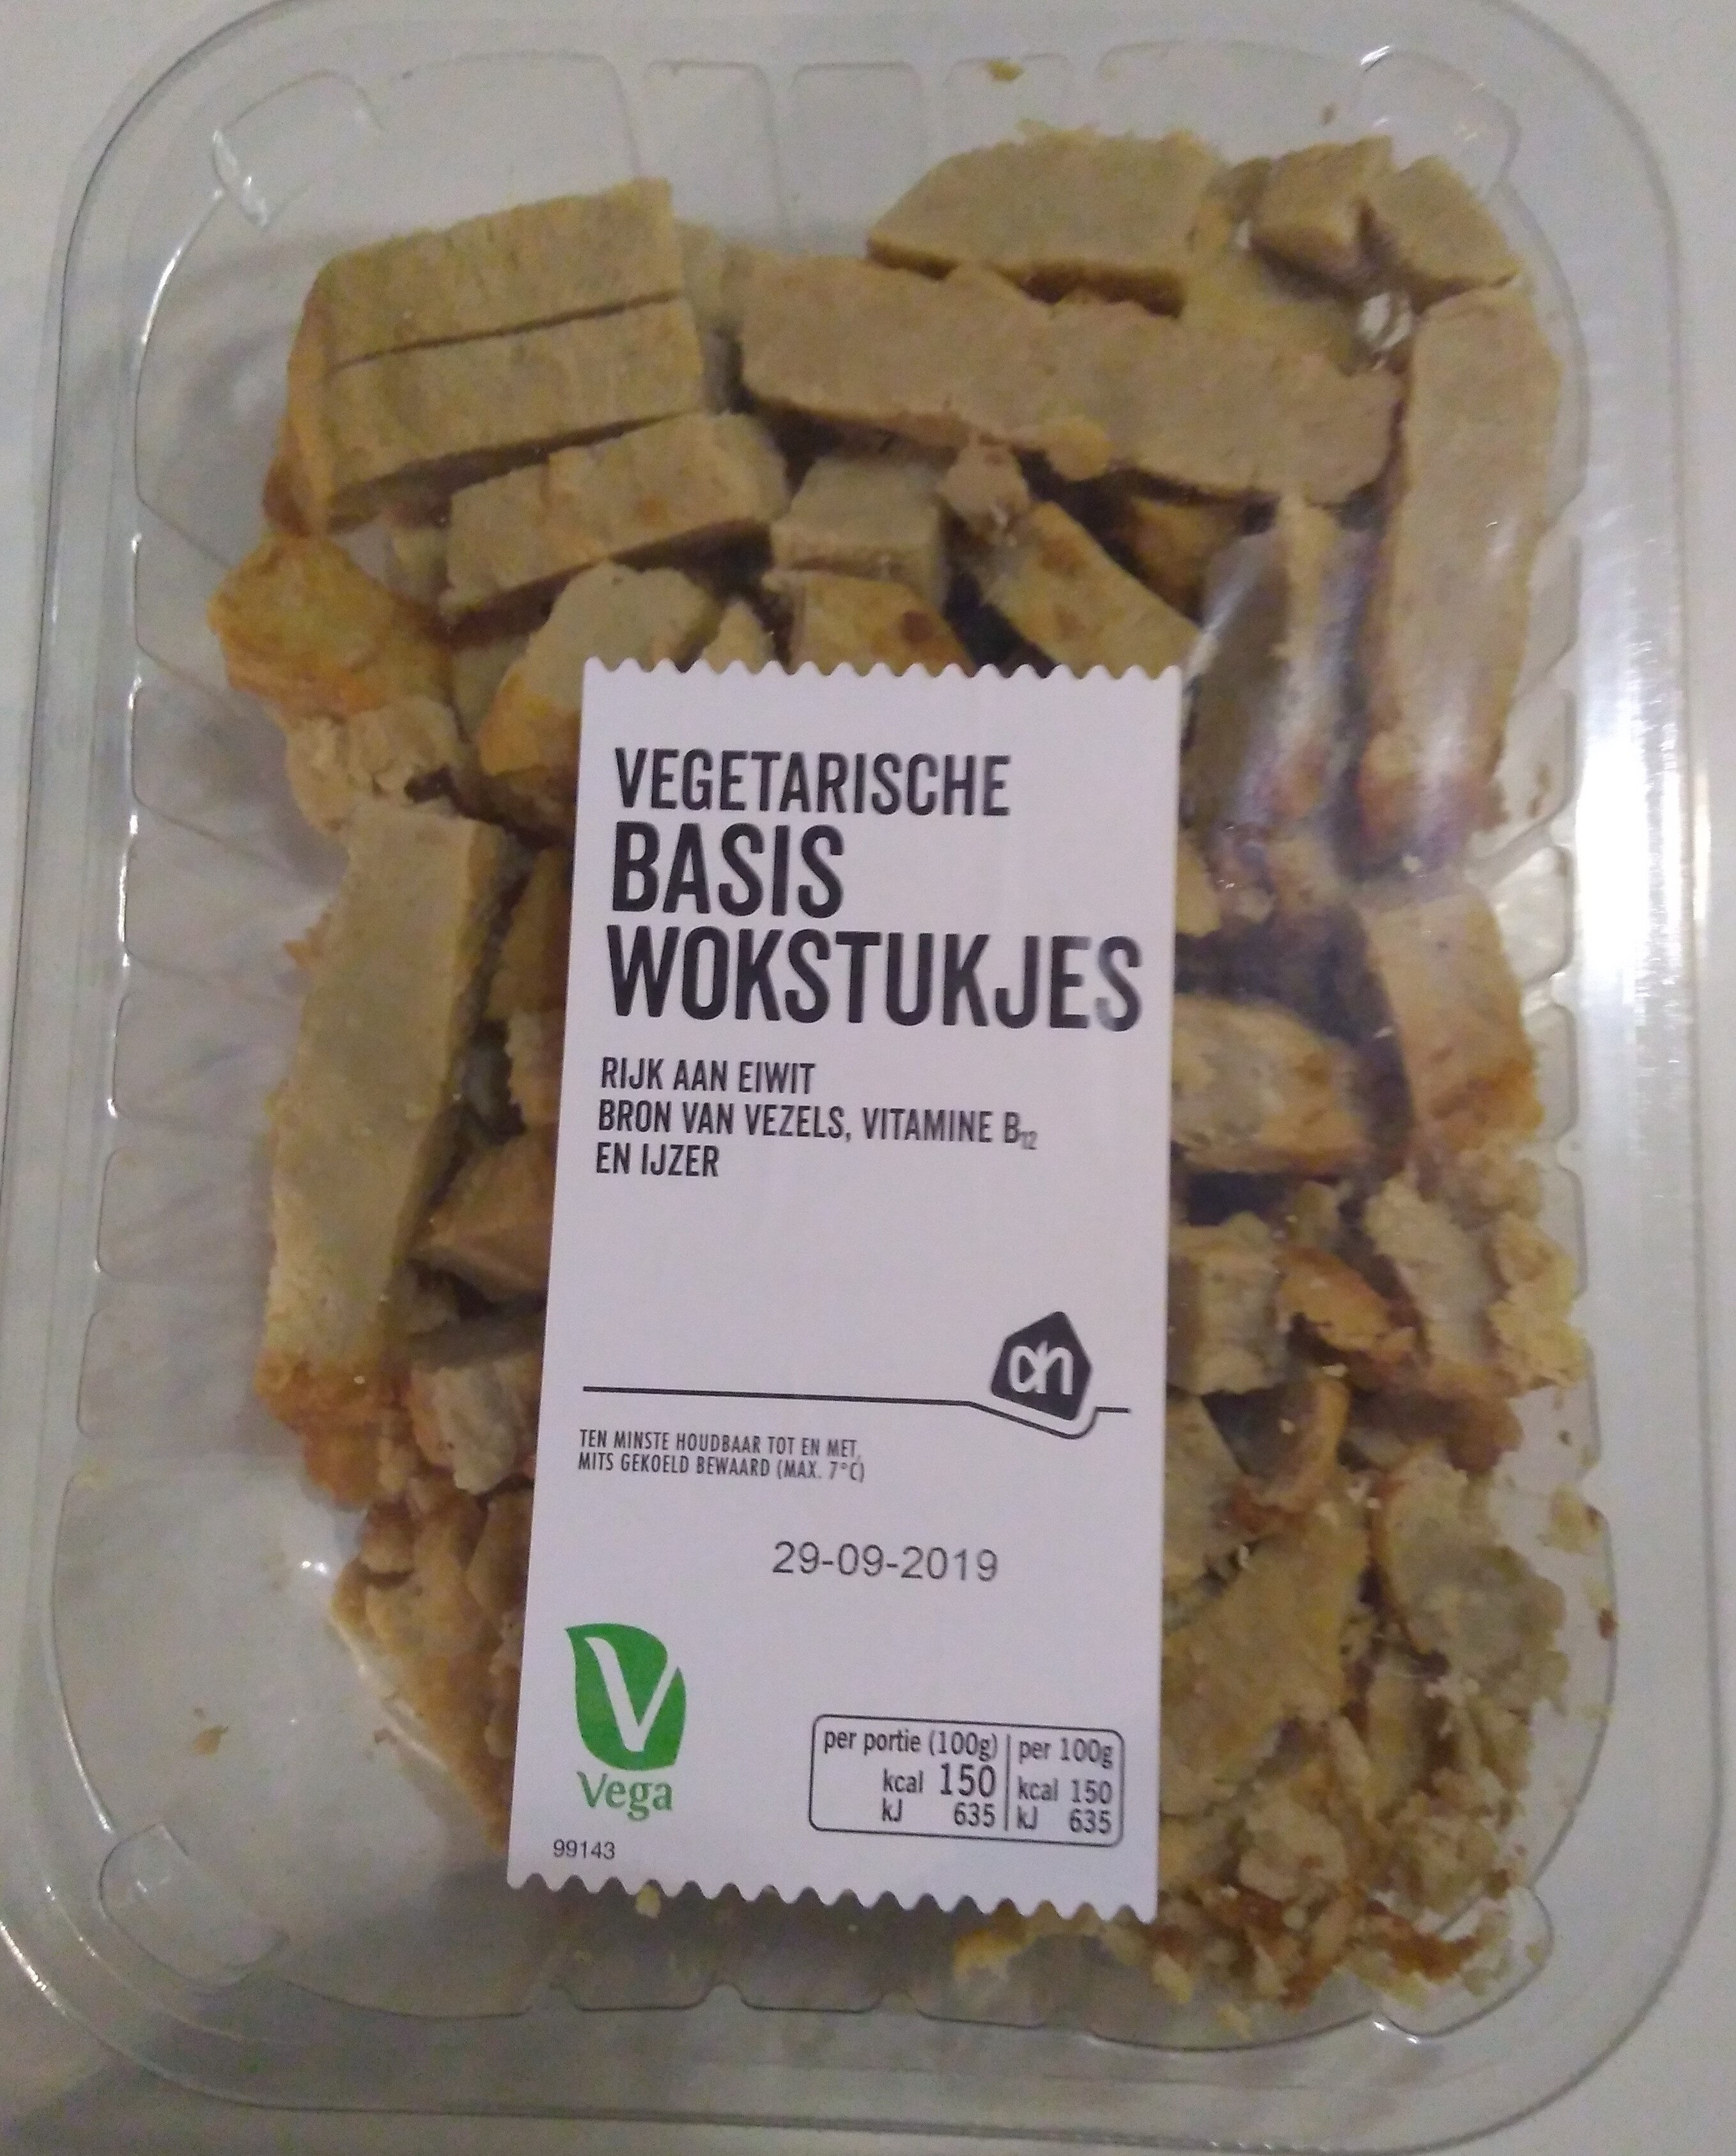 Vegetarische basis wokstukjes - Product - nl